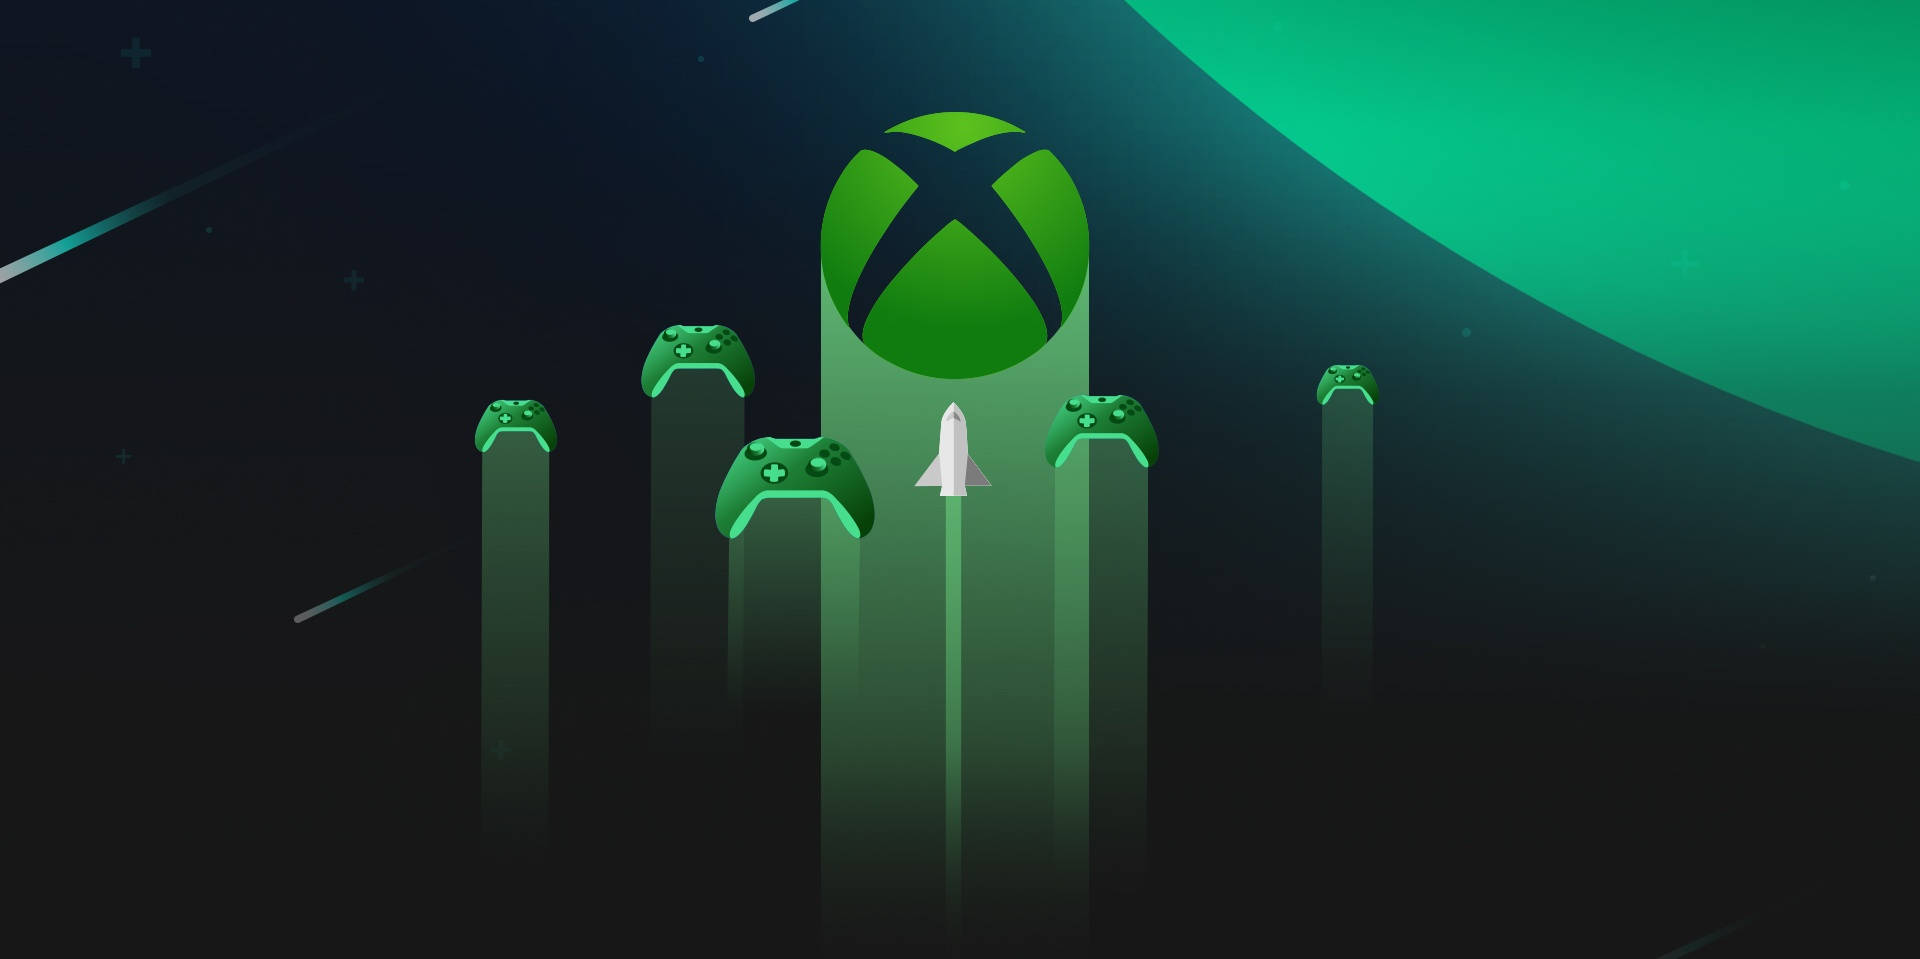 Xbox Series X với chất lượng đồ họa cao cấp cần một hình nền đẹp để phù hợp với nó. Không phải ai cũng có thể trả tiền để tải hình nền. Vì vậy, có thêm danh sách miễn phí hình nền Xbox Series X trên trang chủ WallpaperSafari sẽ là sự lựa chọn tuyệt vời của bạn.